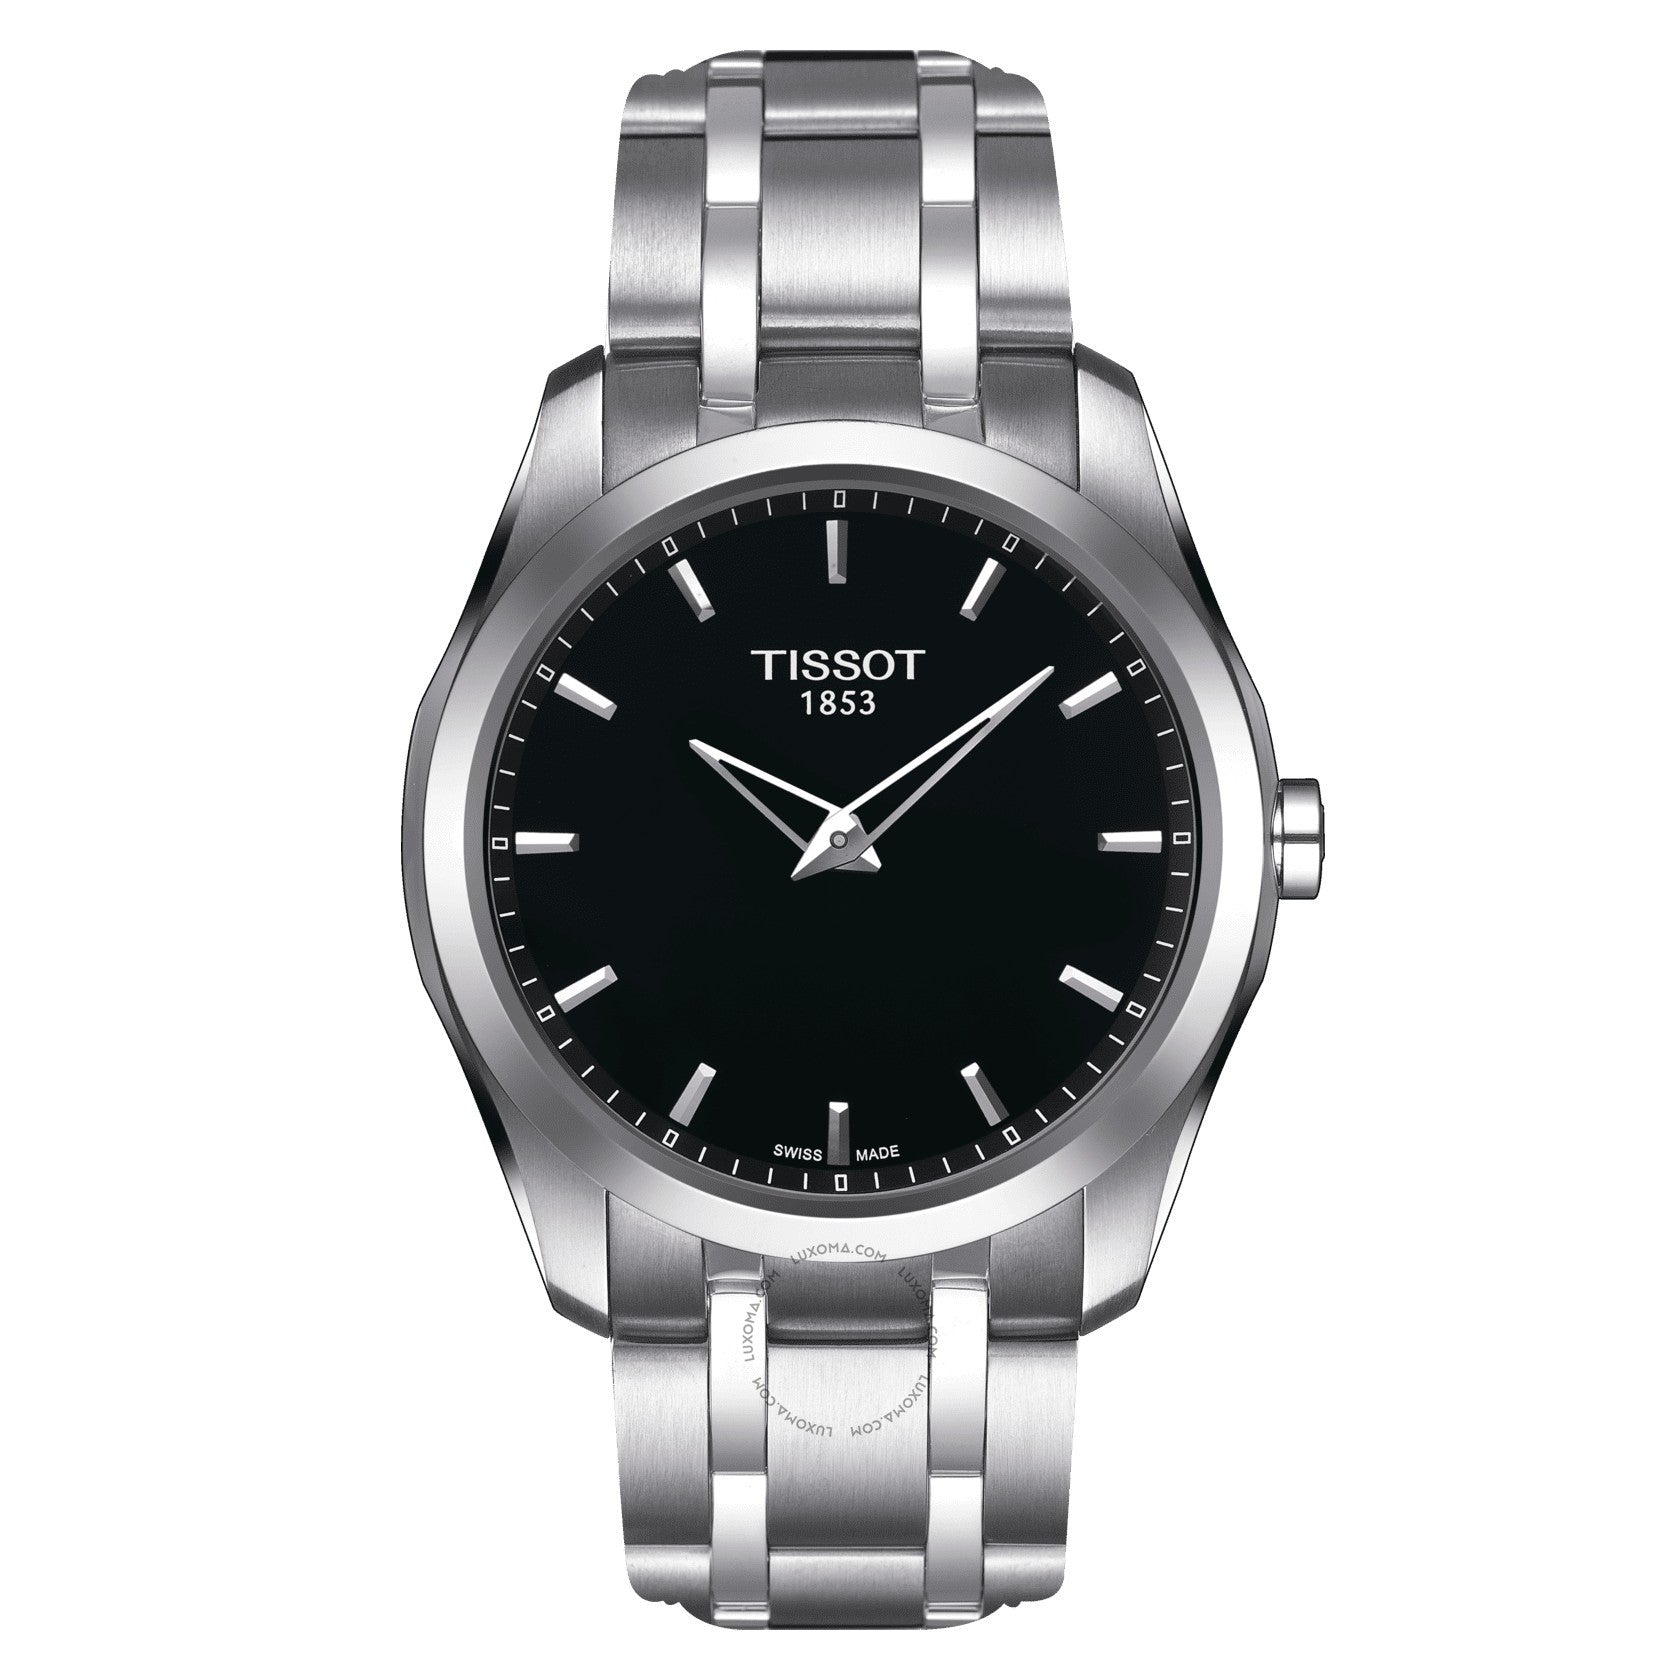 Tissot Couturier Quartz Black Dial Men's Watch T035.446.11.051.00